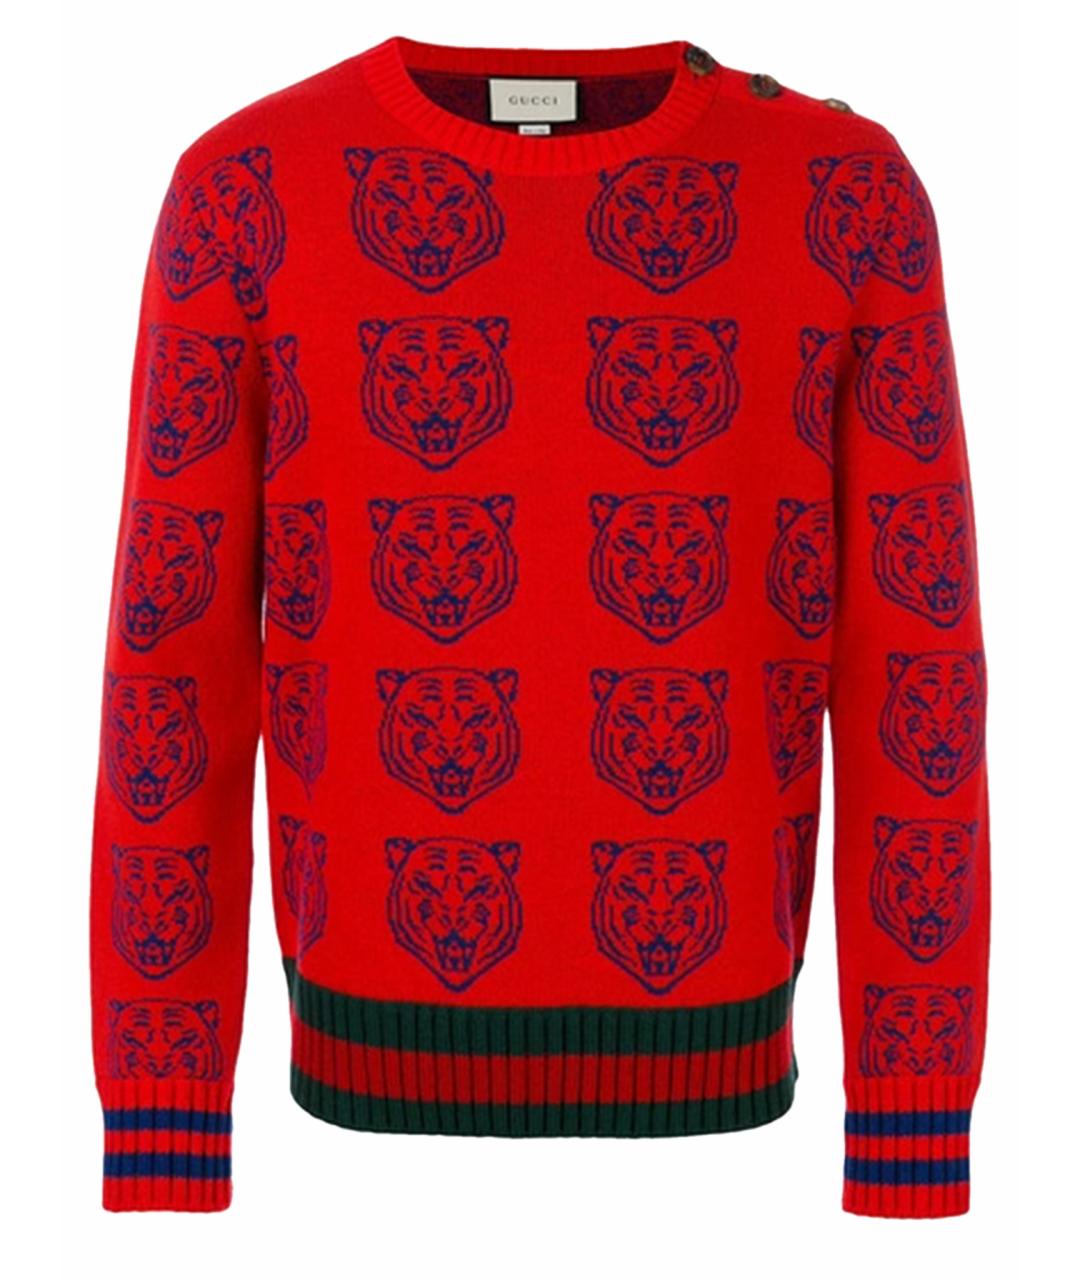 GUCCI Красный шерстяной джемпер / свитер, фото 1